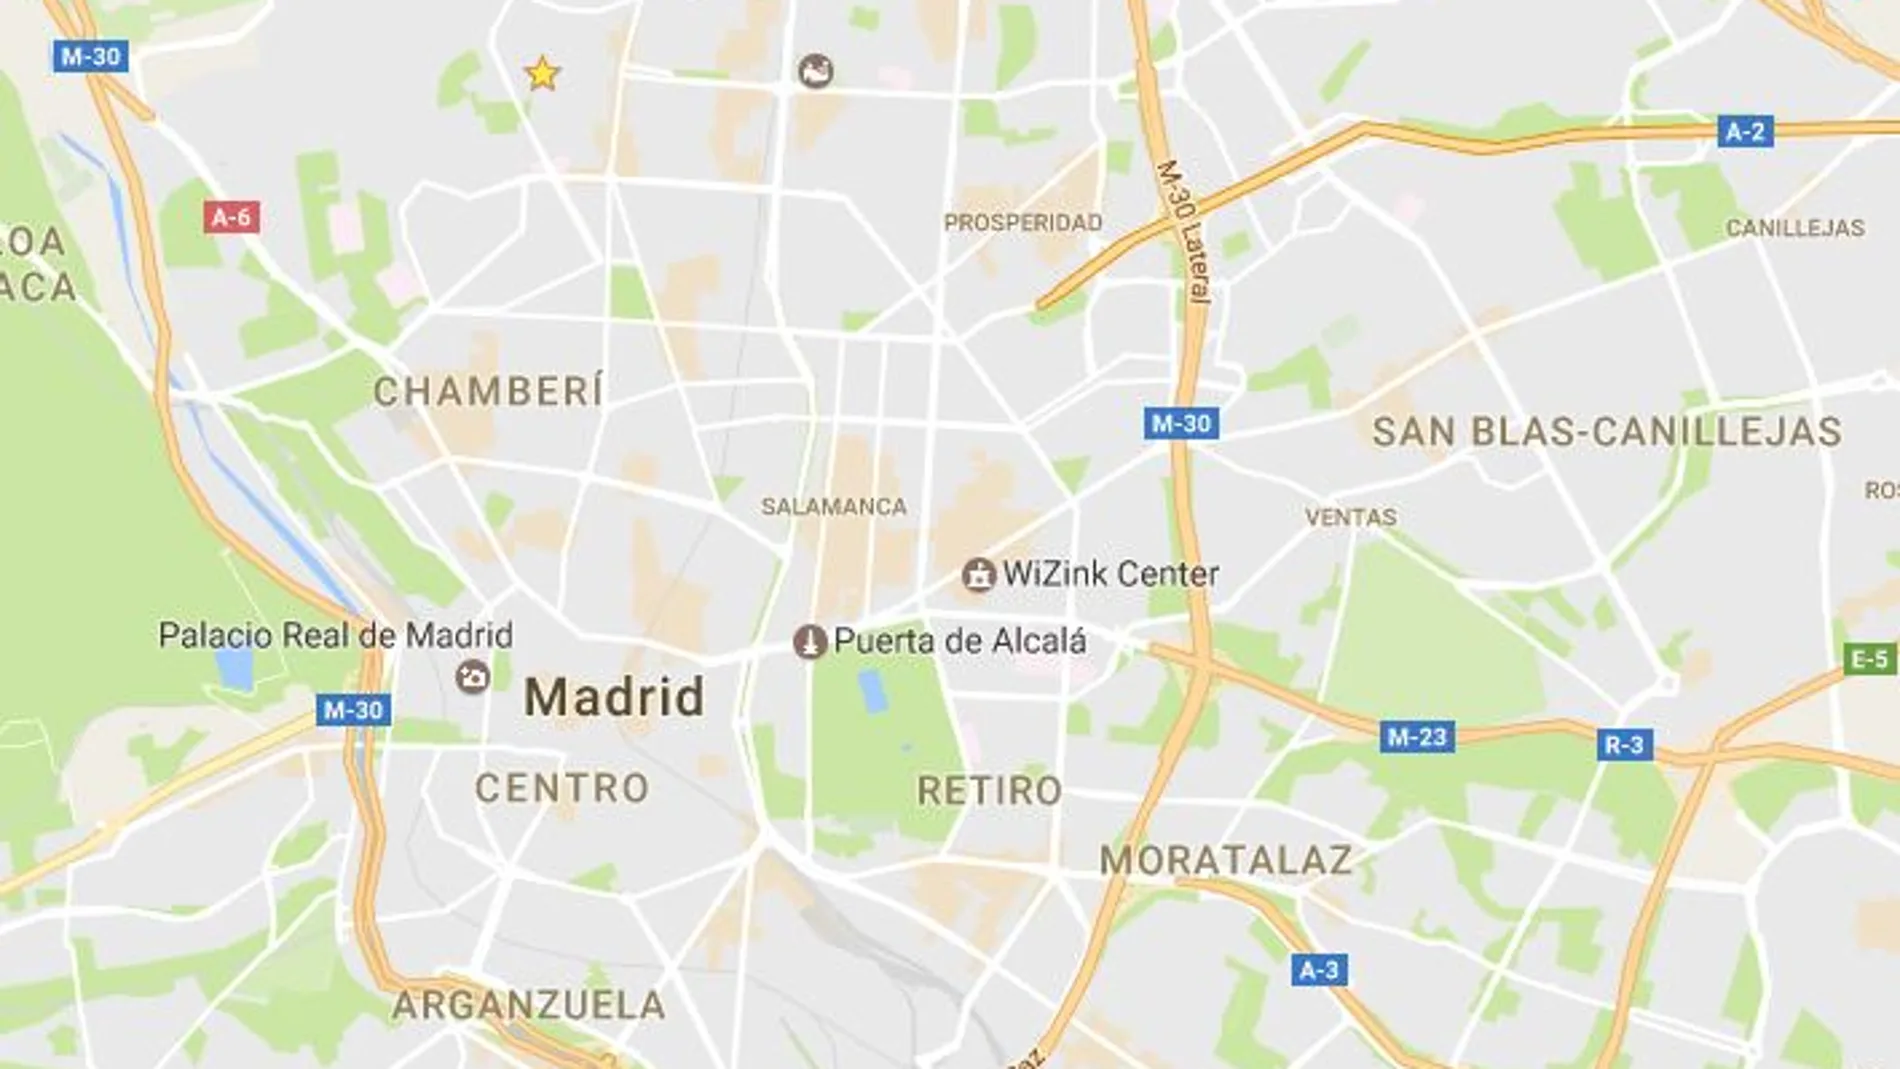 La ciudad de Madrid en Google Maps